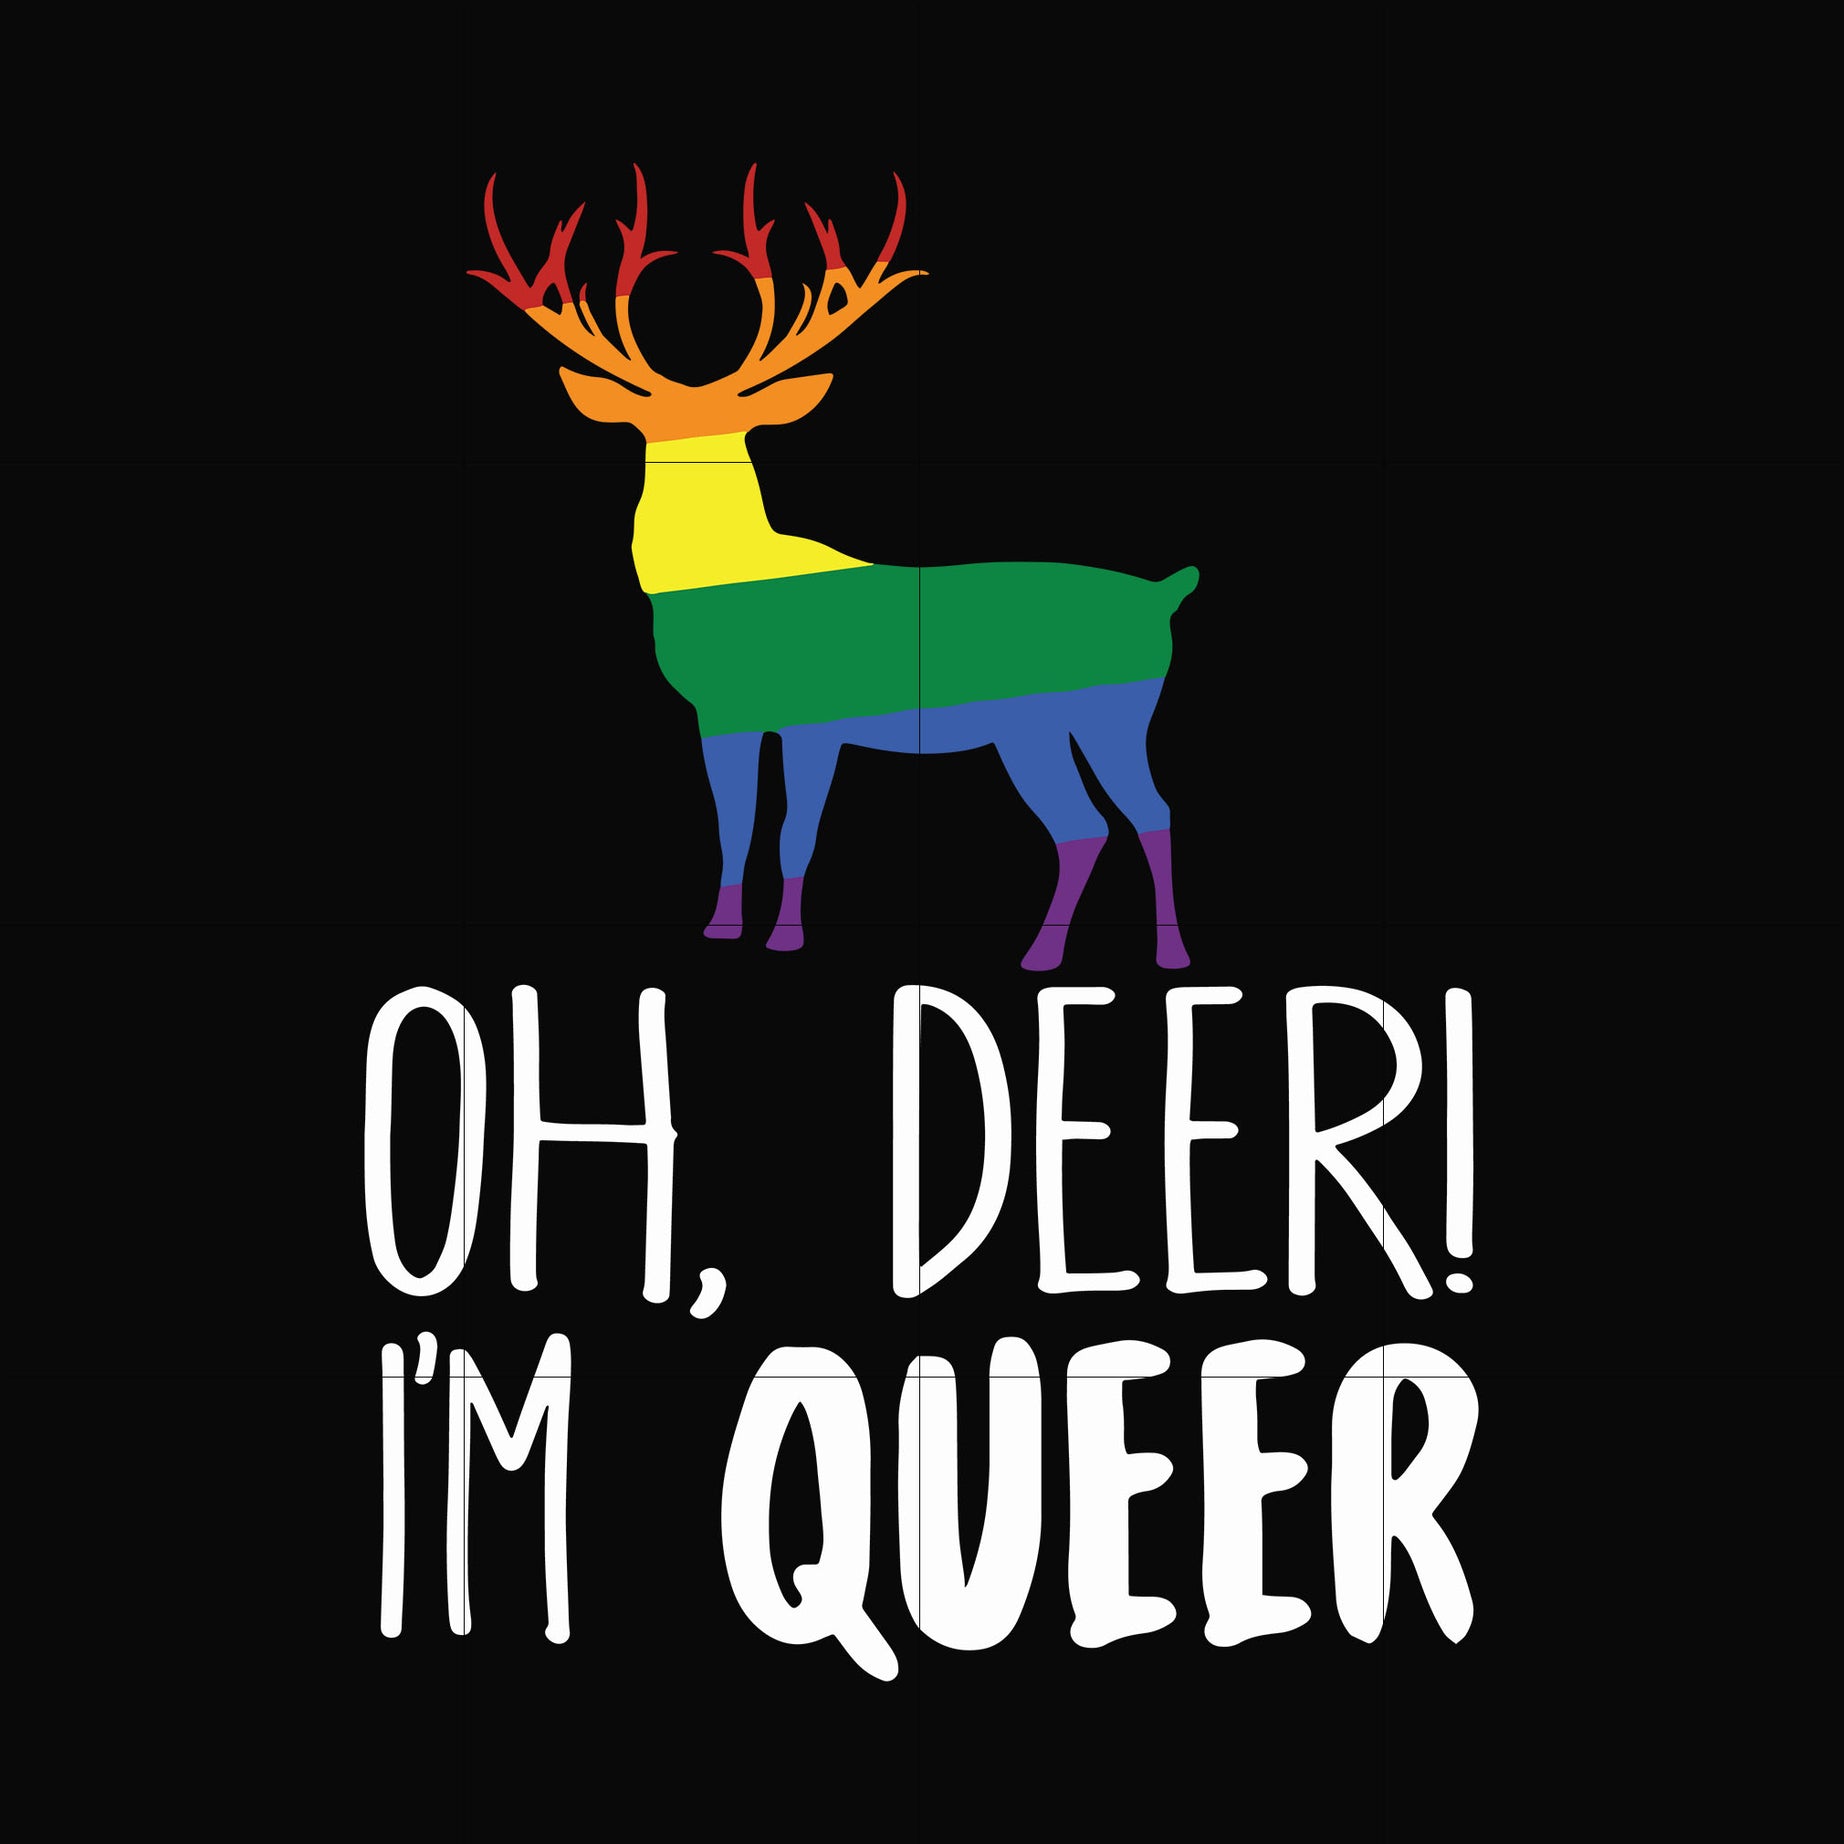 oh deer i'm queer svg, png, dxf, eps digital file OTH0019